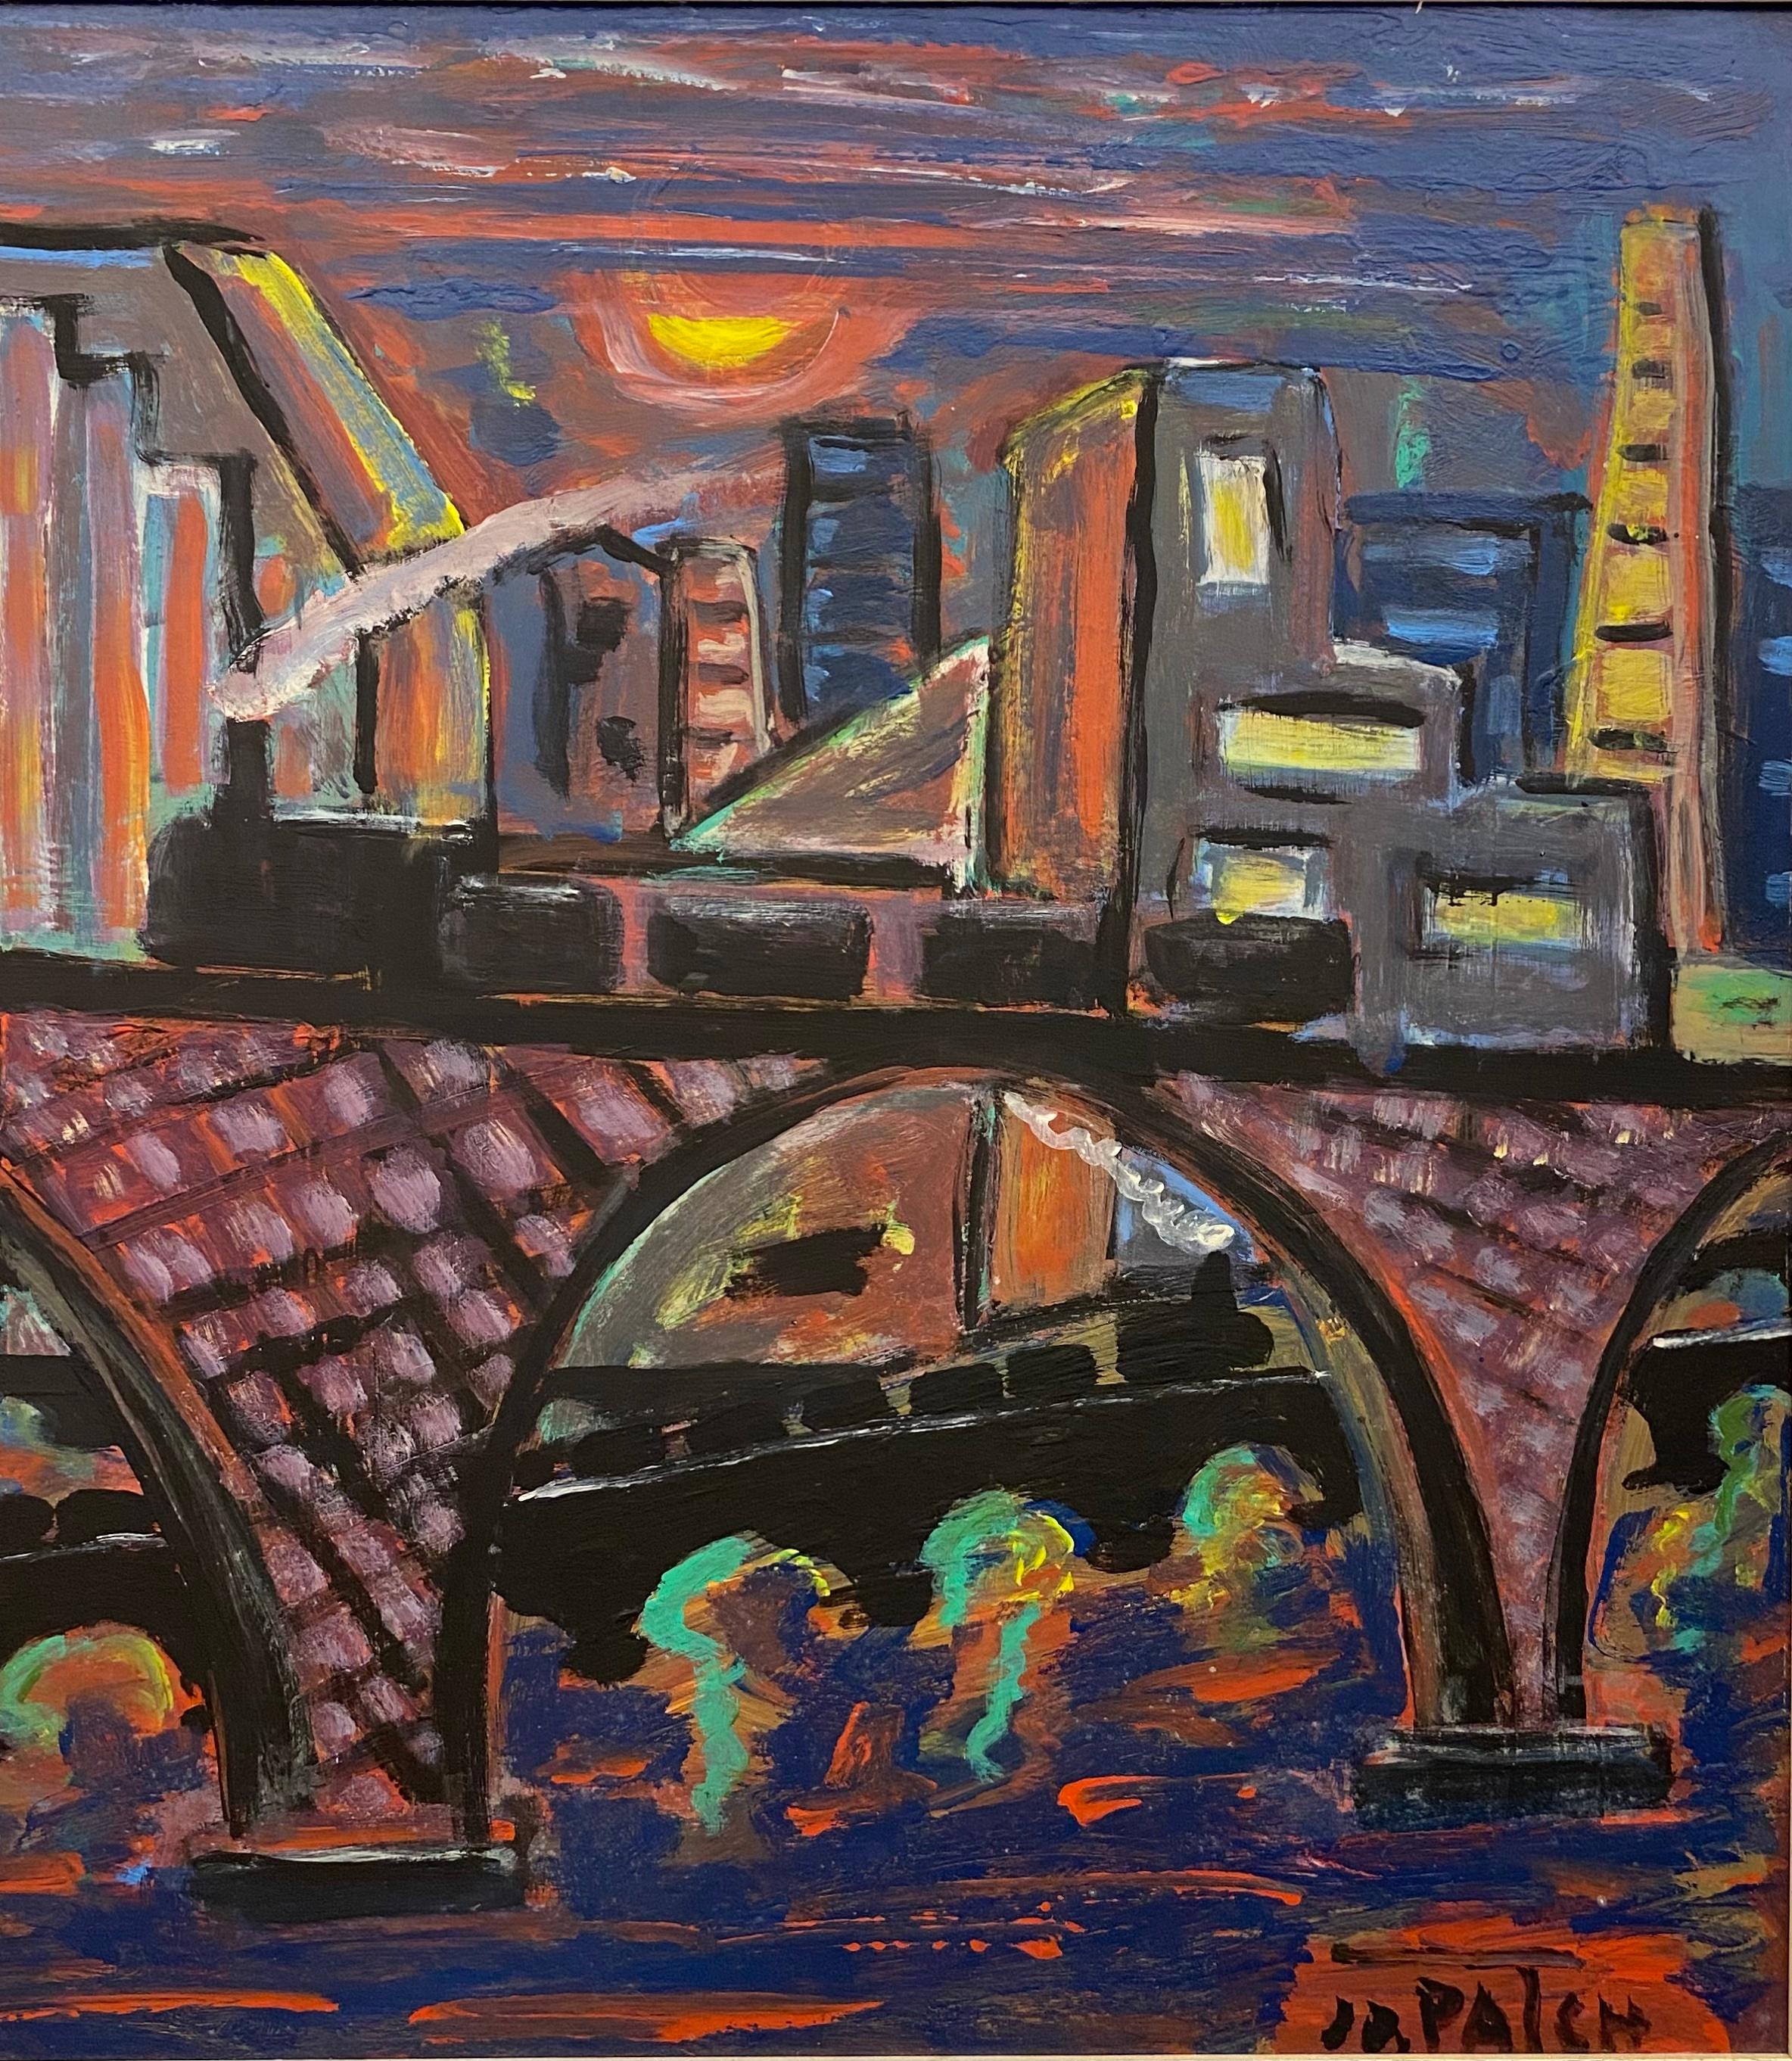 Peinture à l'huile sur carton de Jo Patch. 
Une pièce d'art décoratif très colorée qui représente un paysage urbain au bord d'une rivière ou d'une baie. C'est peut-être une vue de quelque part dans la ville de New York. 

Jo Patch est né à Opprebais